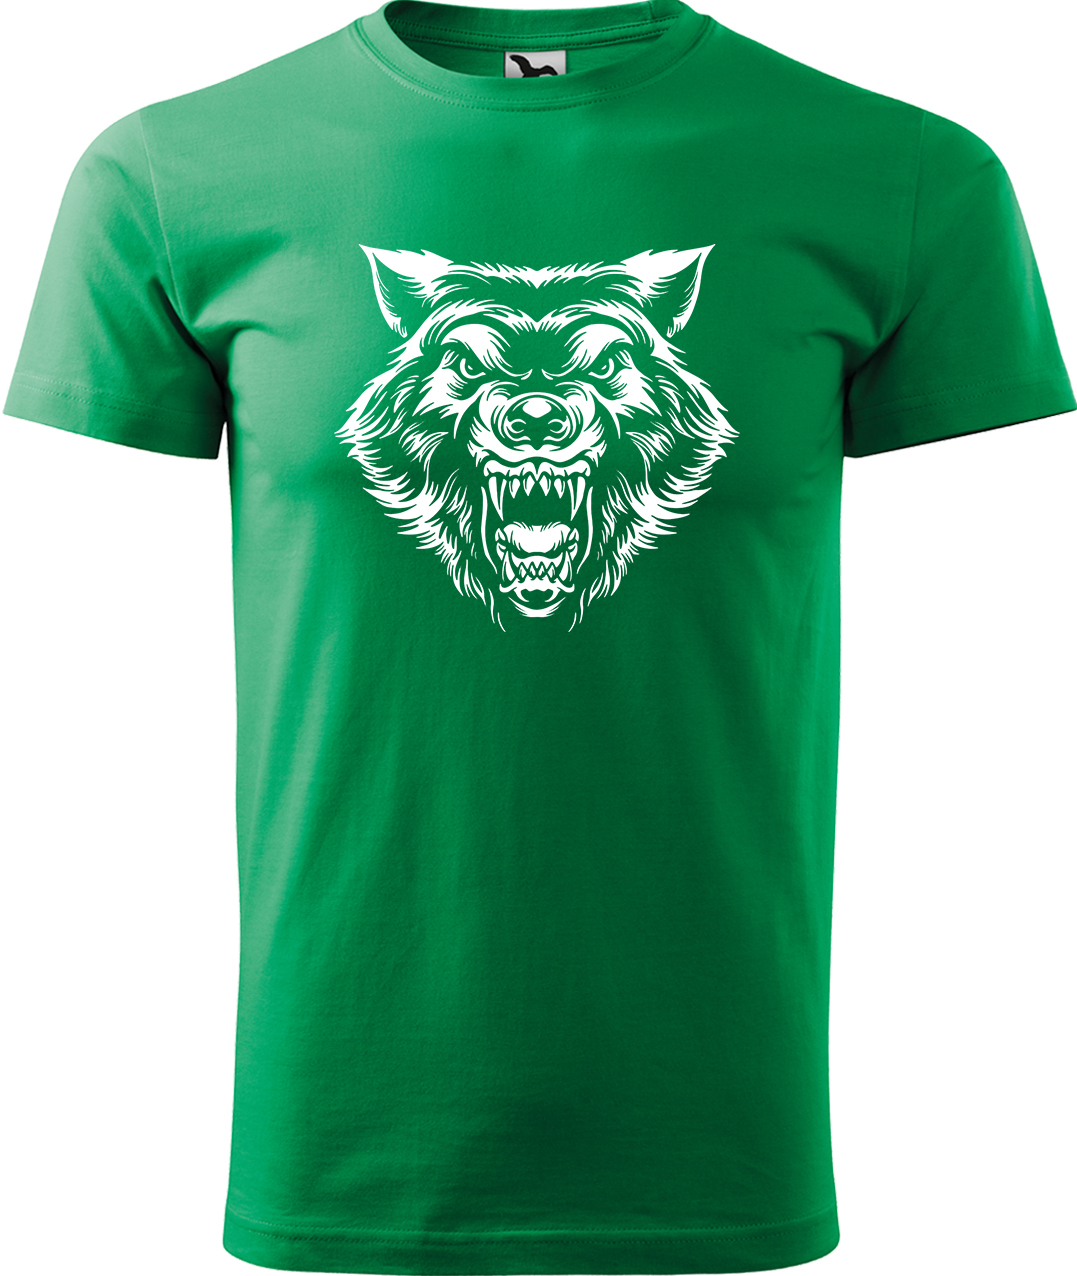 Pánské tričko s vlkem - Rozzuřený vlk Velikost: M, Barva: Středně zelená (16), Střih: pánský